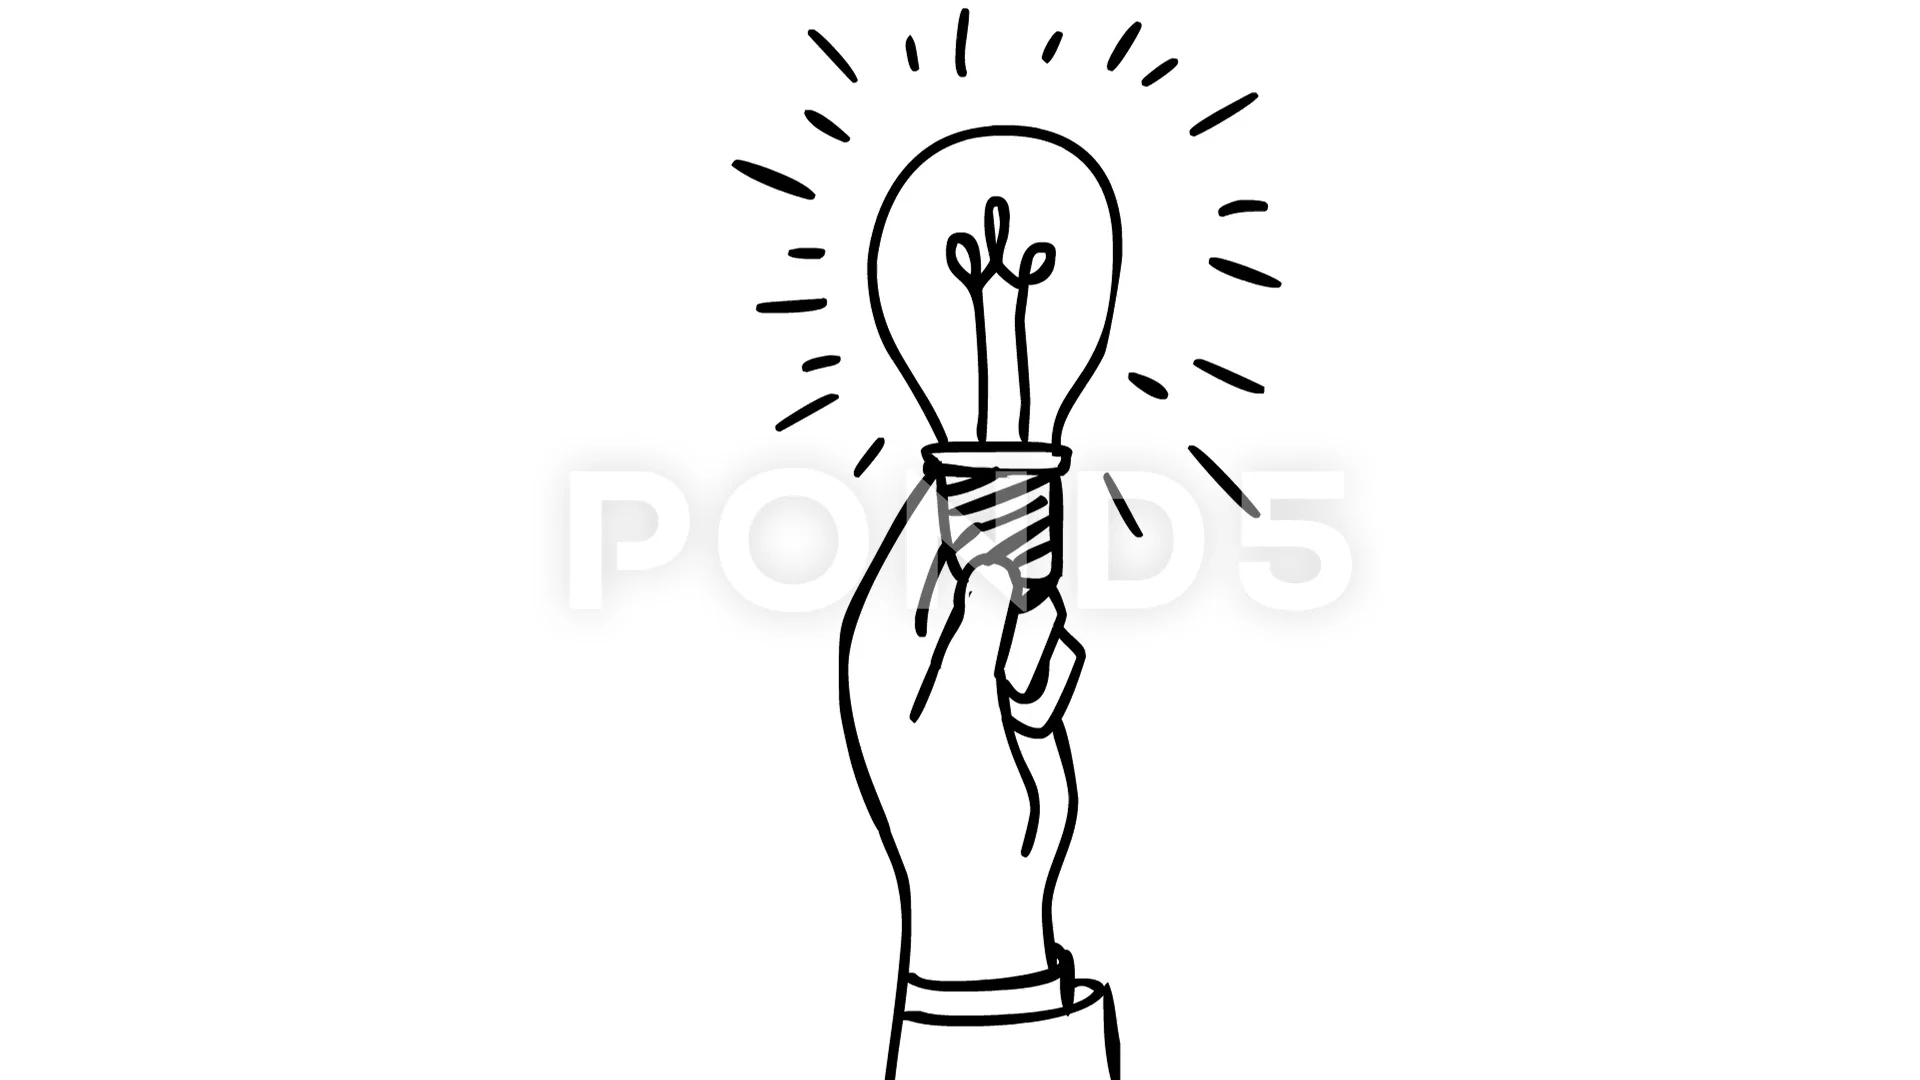 Hand Holding Light Bulb Sketch  Light bulb sketch, Light bulb drawing,  Light bulb illustration